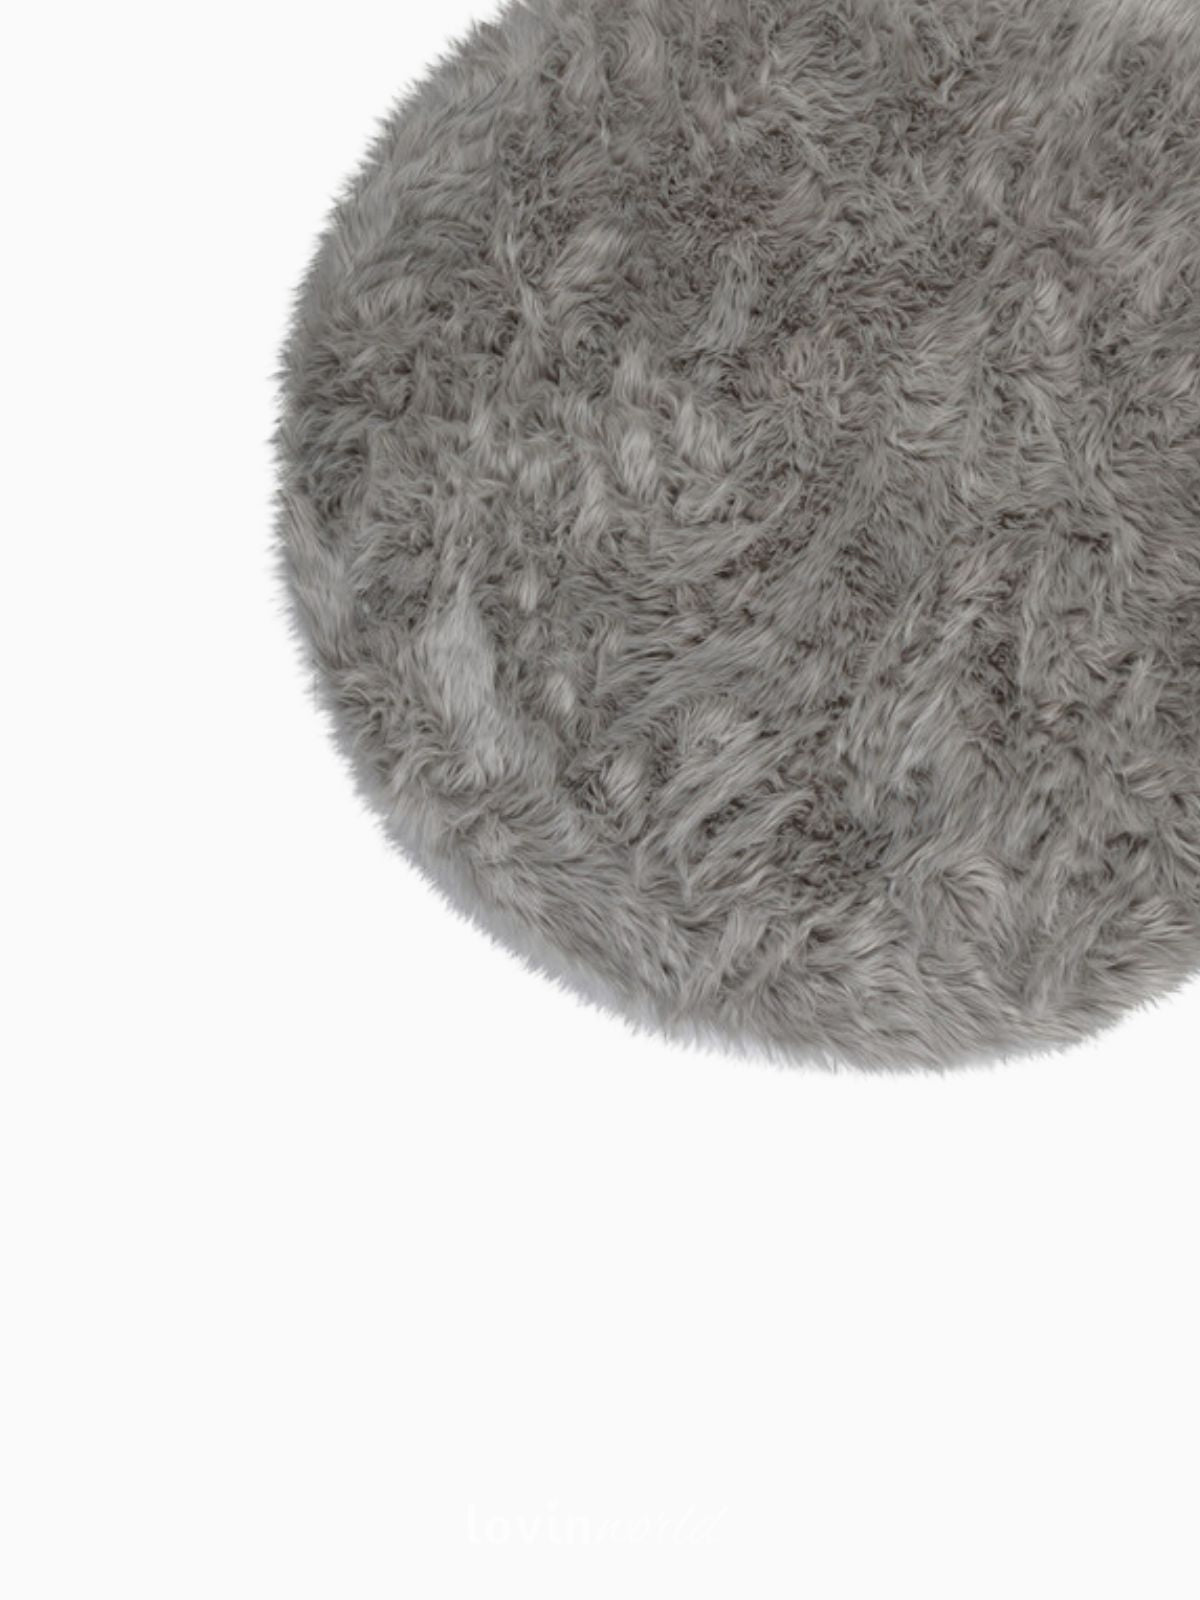 Tappeto rotondo shaggy Sheepskin in poliestere, colore grigio 120x120 cm.-4